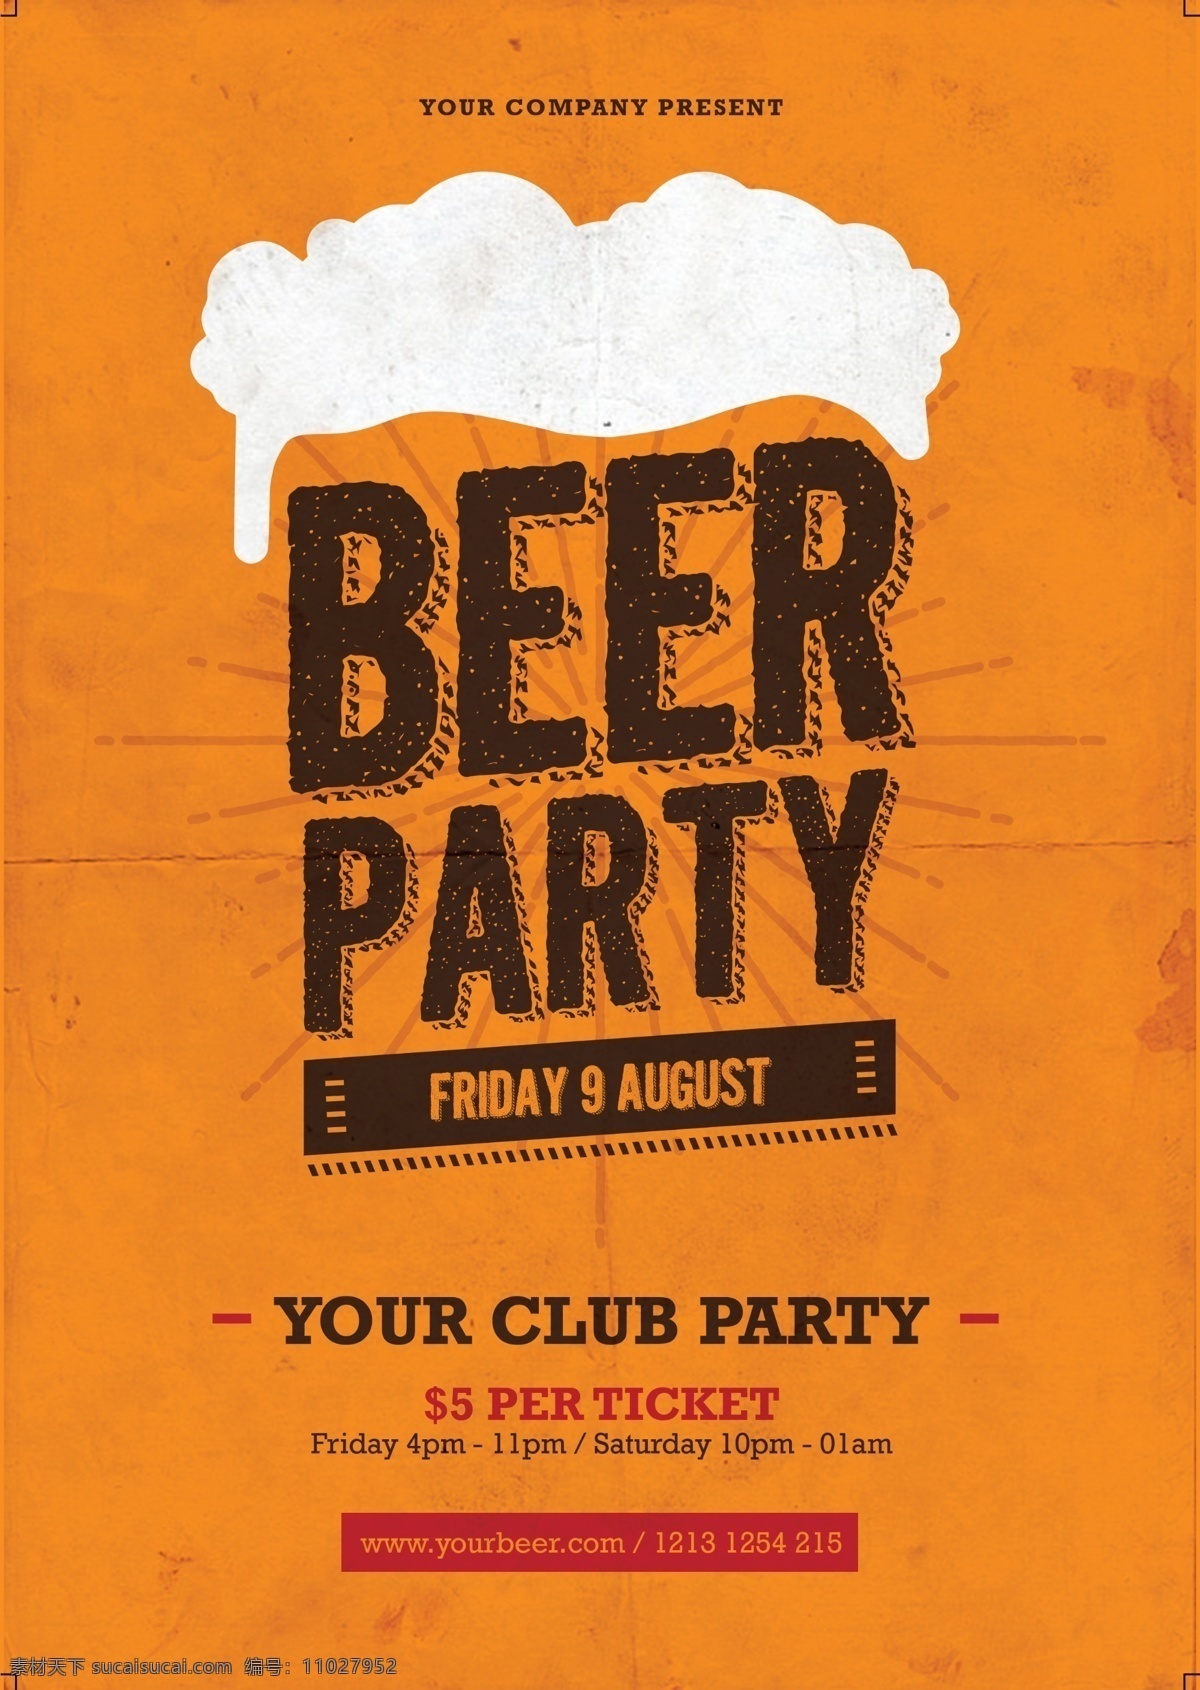 啤酒节 啤酒 派对 宣传海报 海报 活动海报 派对宣传海报 啤酒派对 啤酒节海报